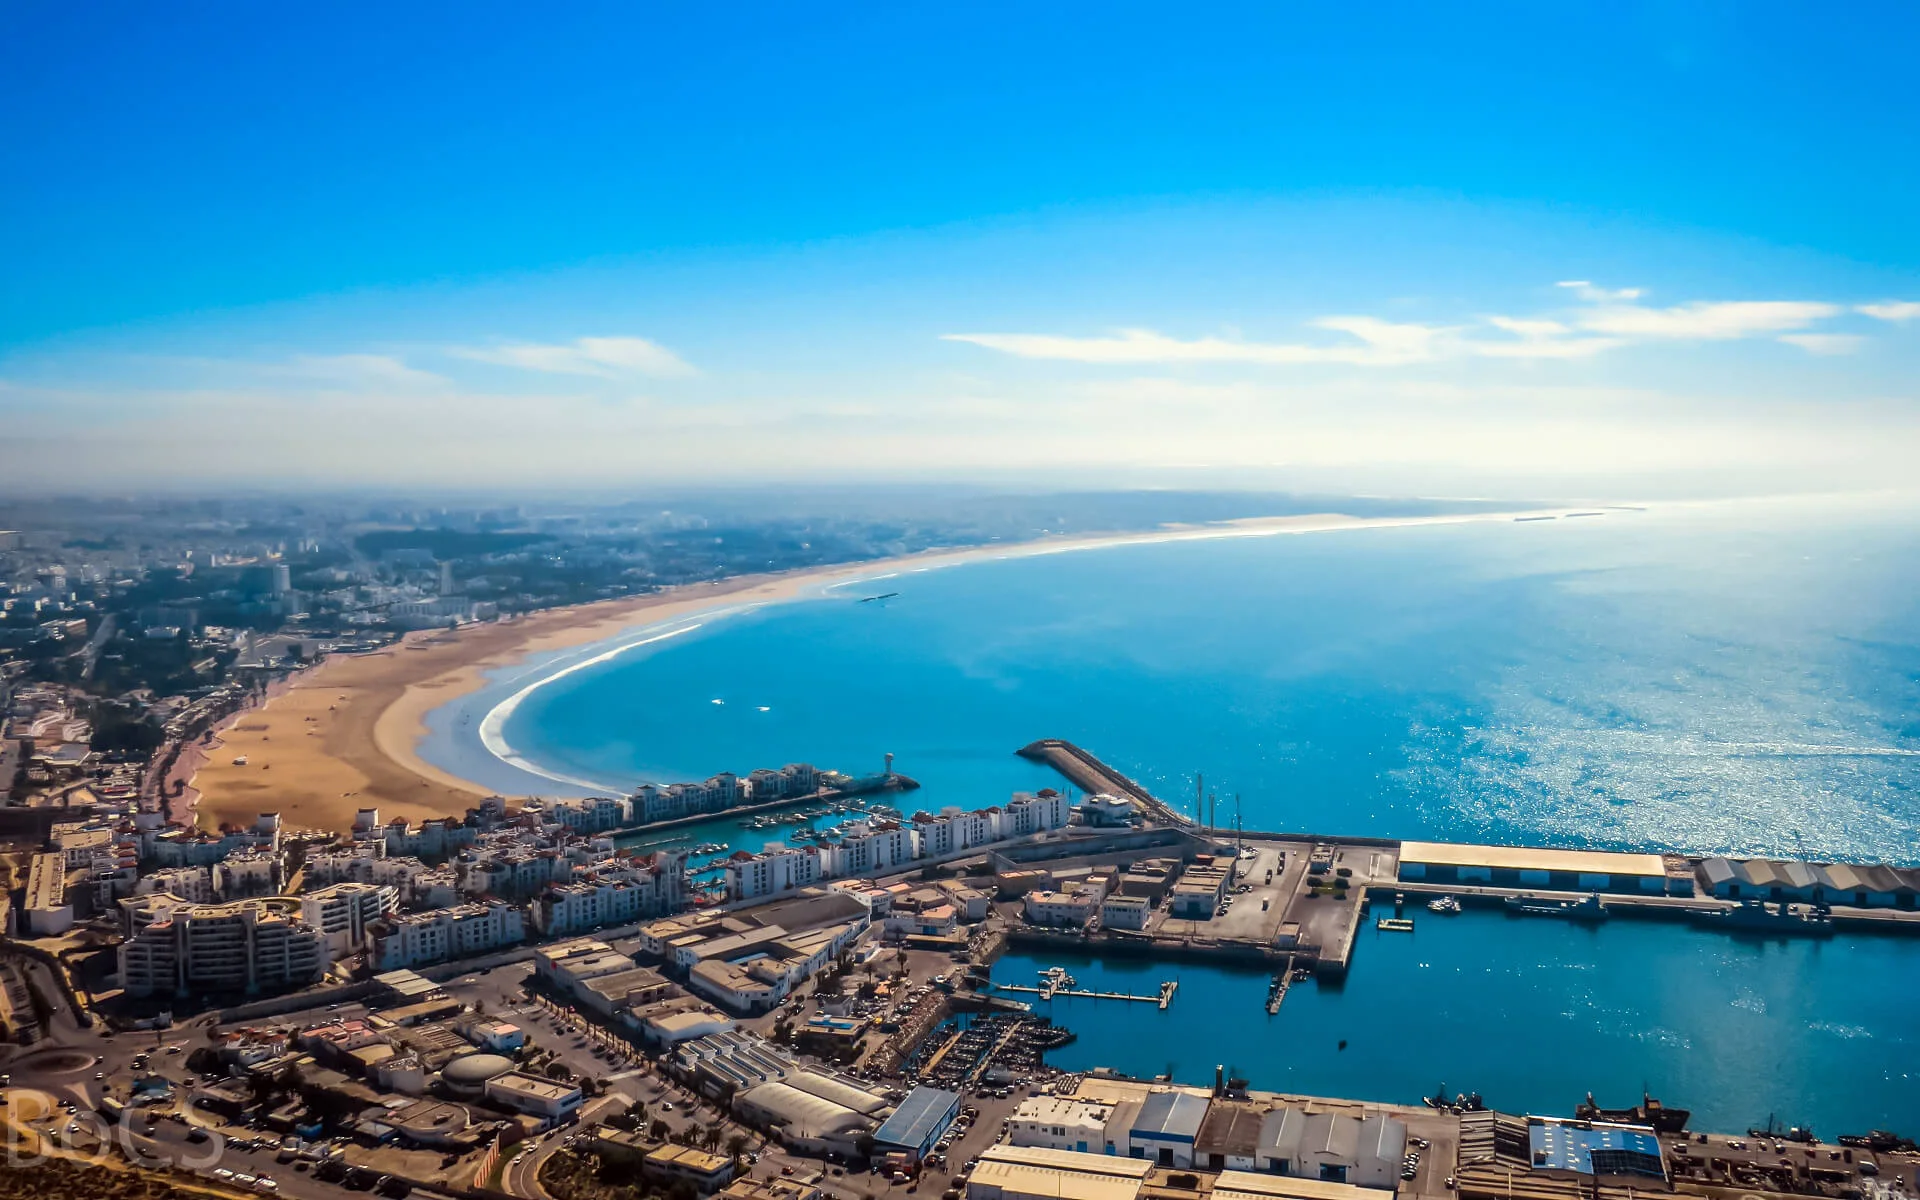 Day 01 Agadir - Fort Bou Jerif